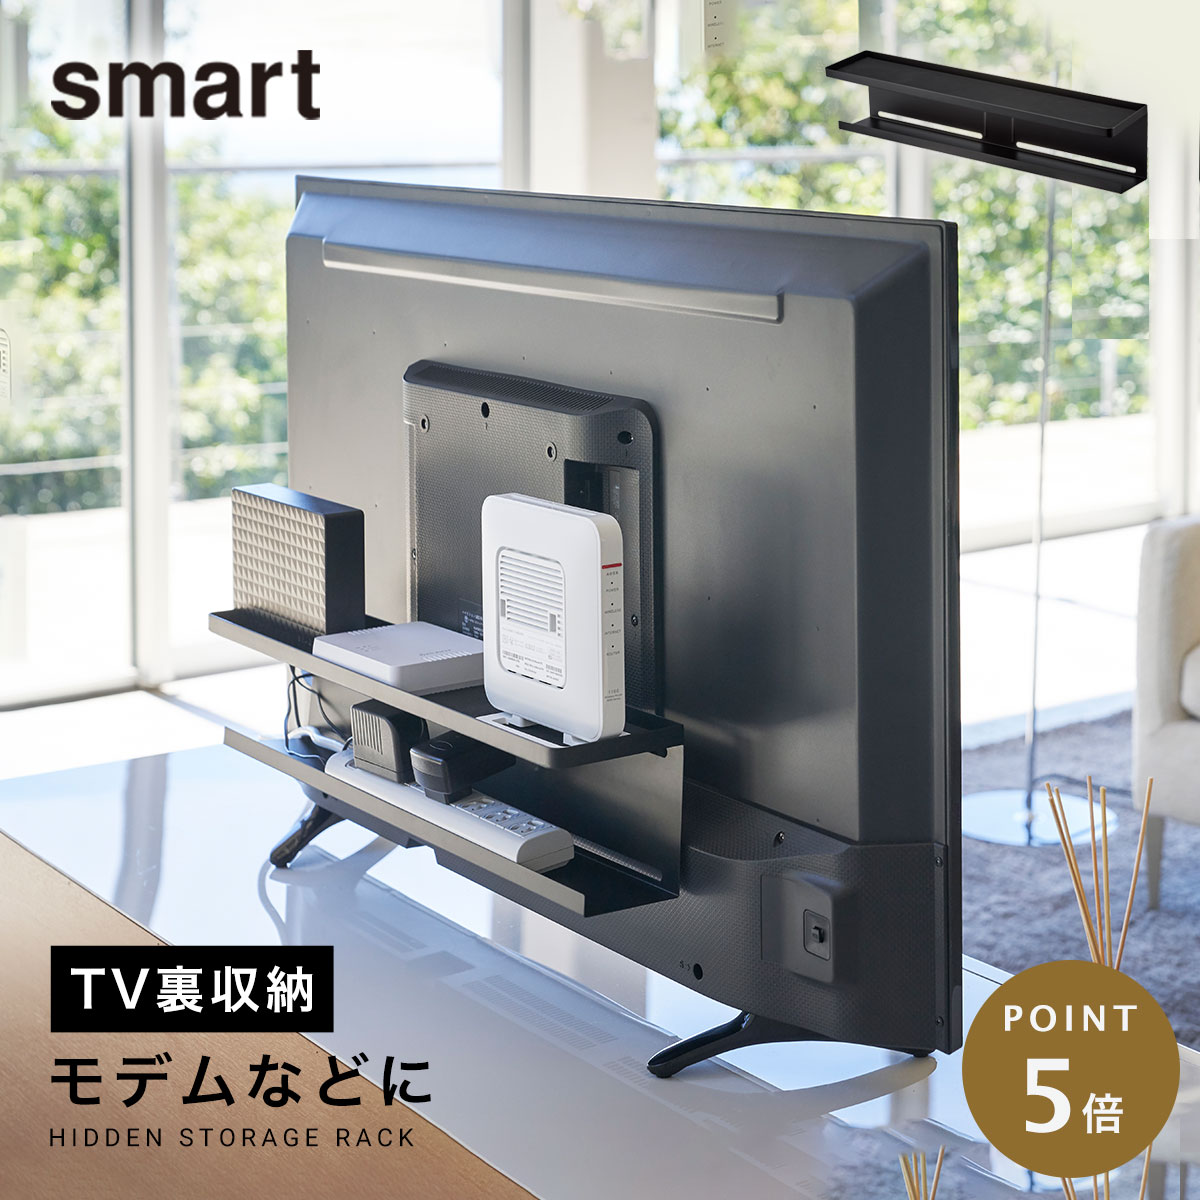 記念日 smart テレビ上 裏ラック スマート ワイド ブラック 4883